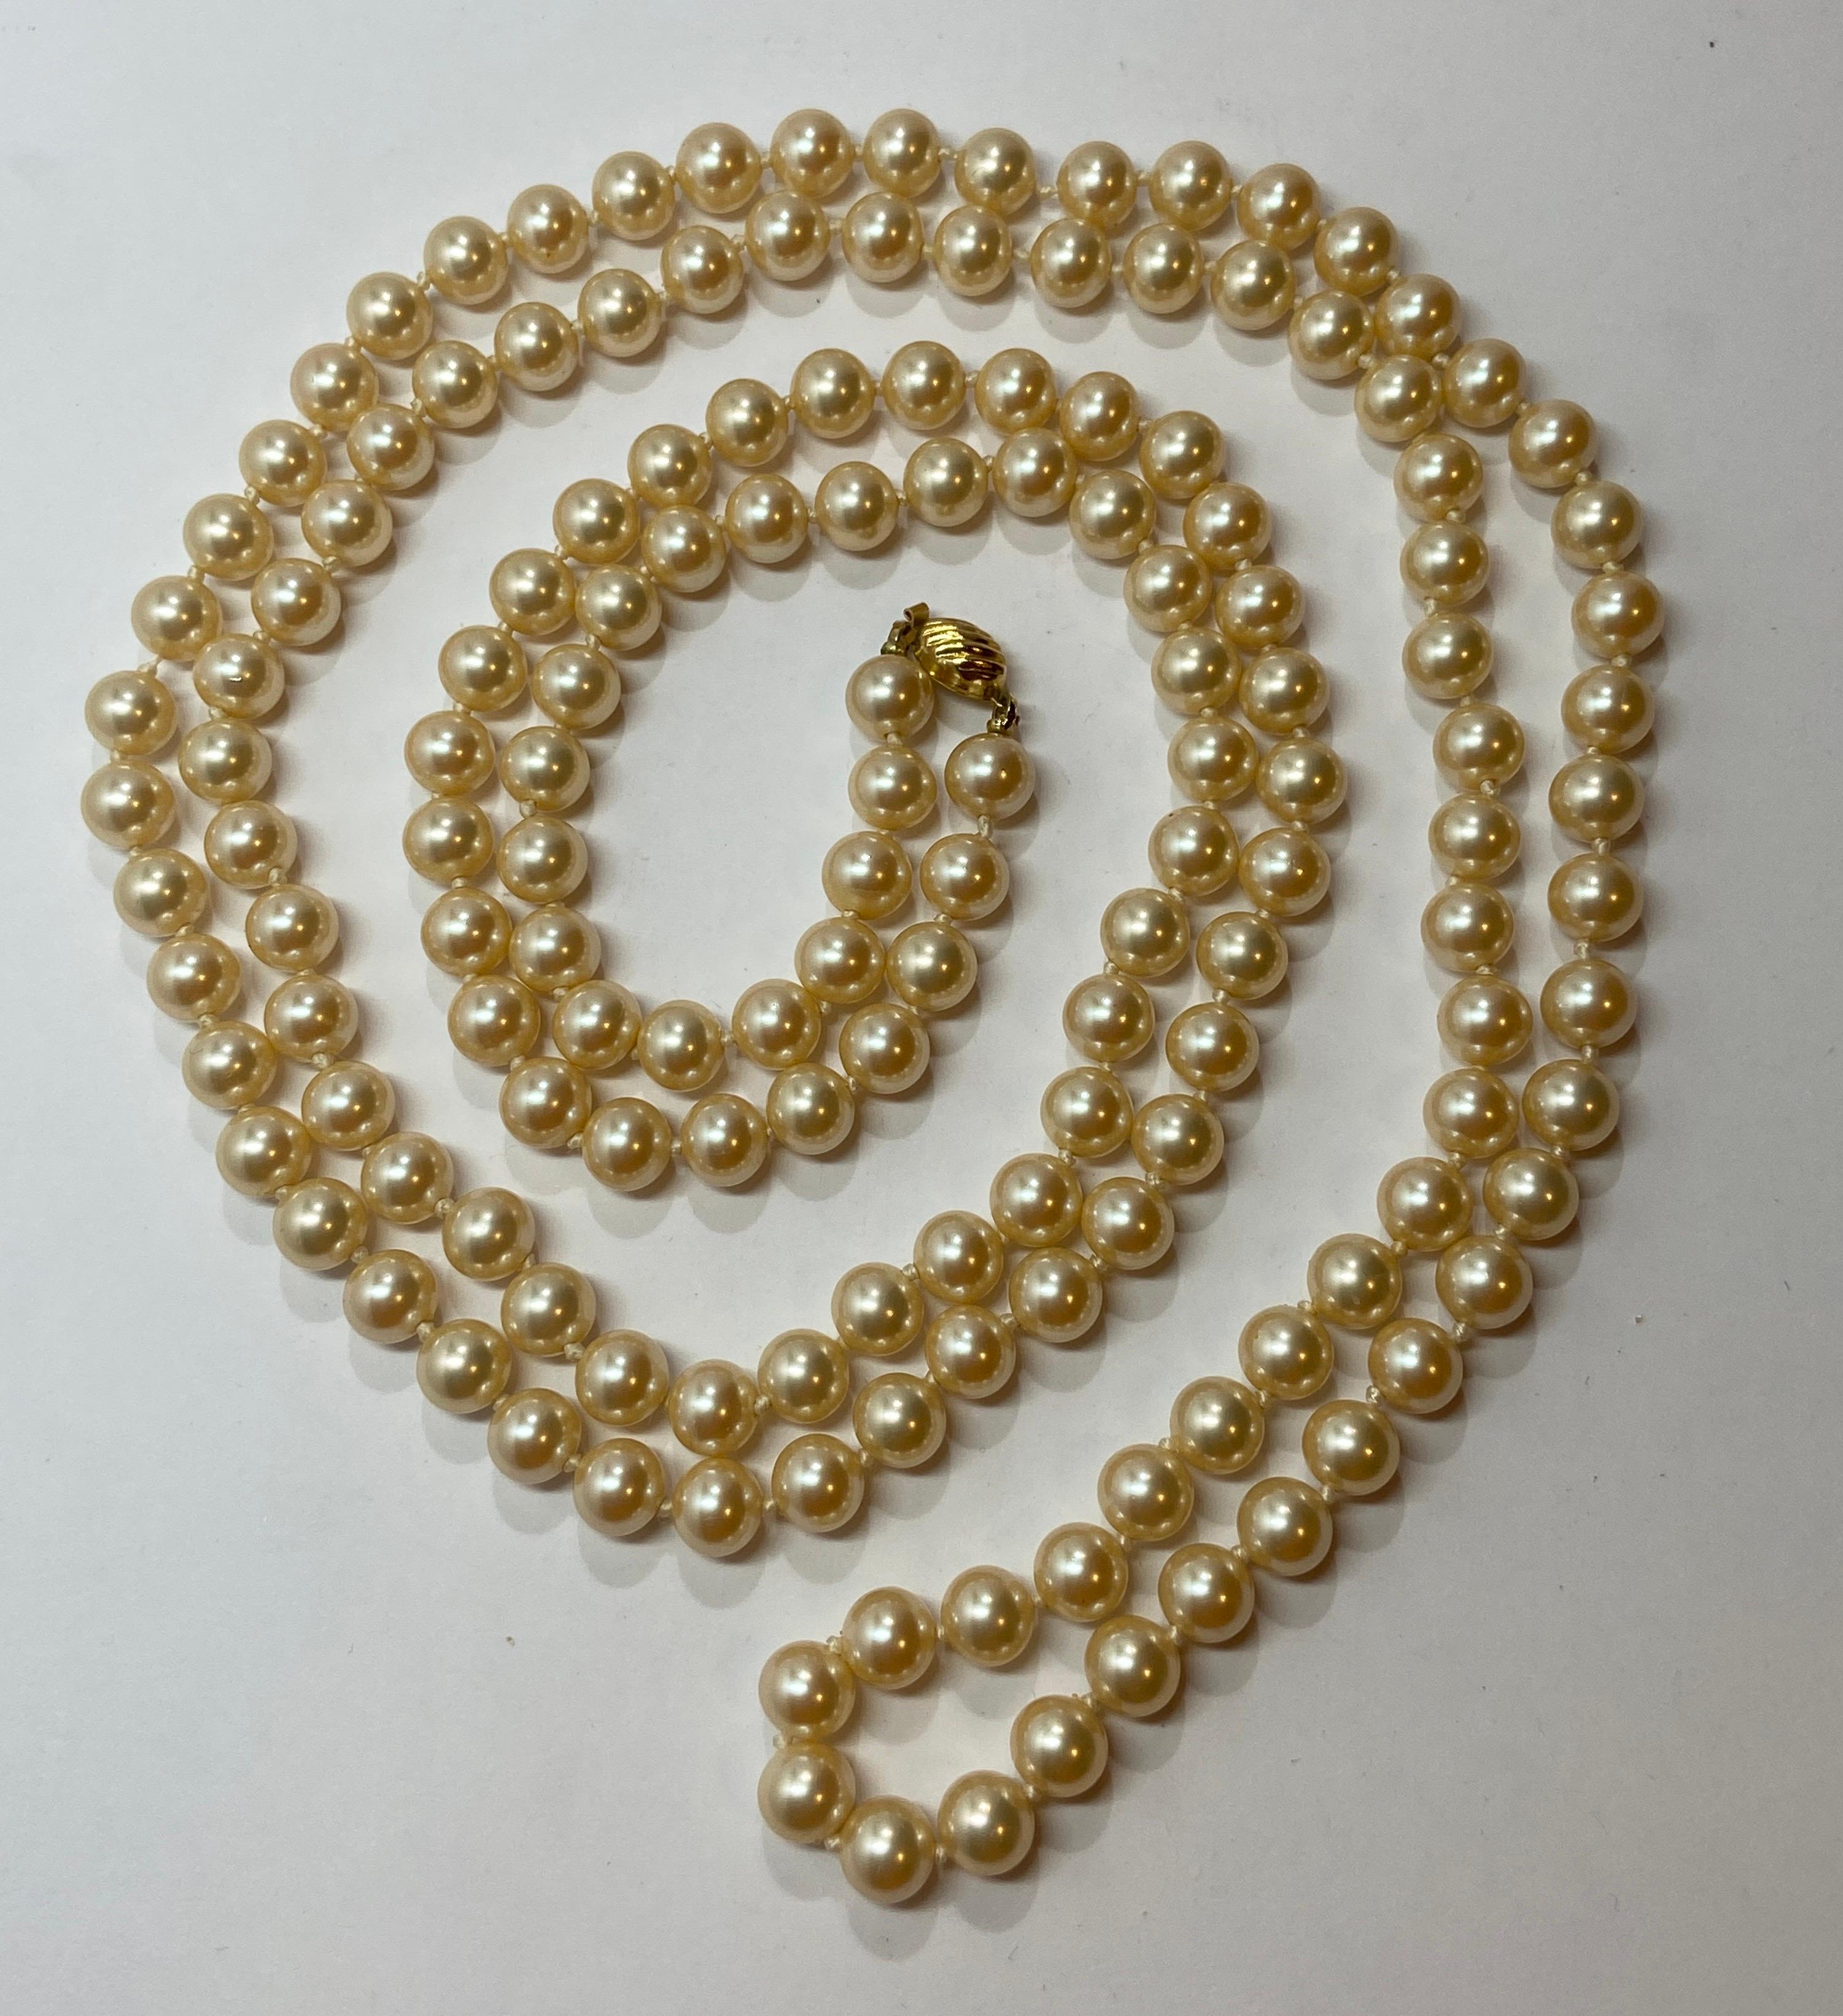 Marvella wunderbar elegant handgeknüpfte Perle mit poliertem Gold Hardware Verschluss misst 54 Zoll in der Gesamtlänge. Der Umfang der Perlen beträgt 3/8 Zoll. Hergestellt in den U.S.A.